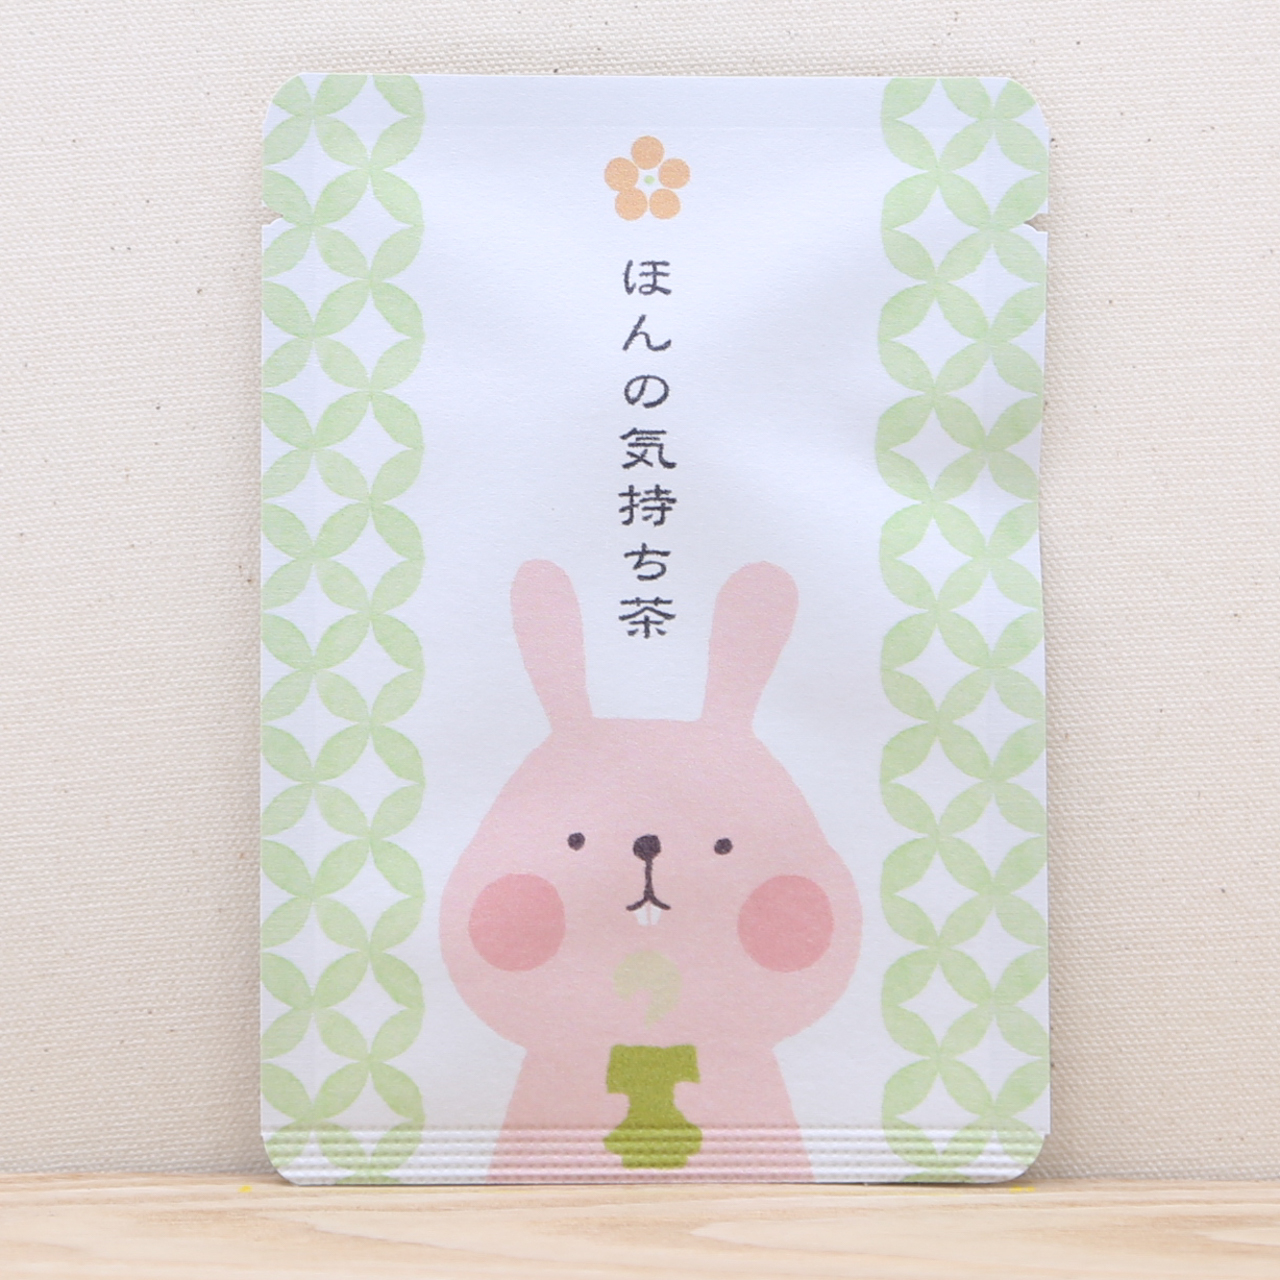 ほんの気持ち茶 ウサギさん ごあいさつ茶 玉露ティーバッグ1包入り 京都ぎょくろのごえん茶 おいしいたのしいお茶ギフトをお届けいたします